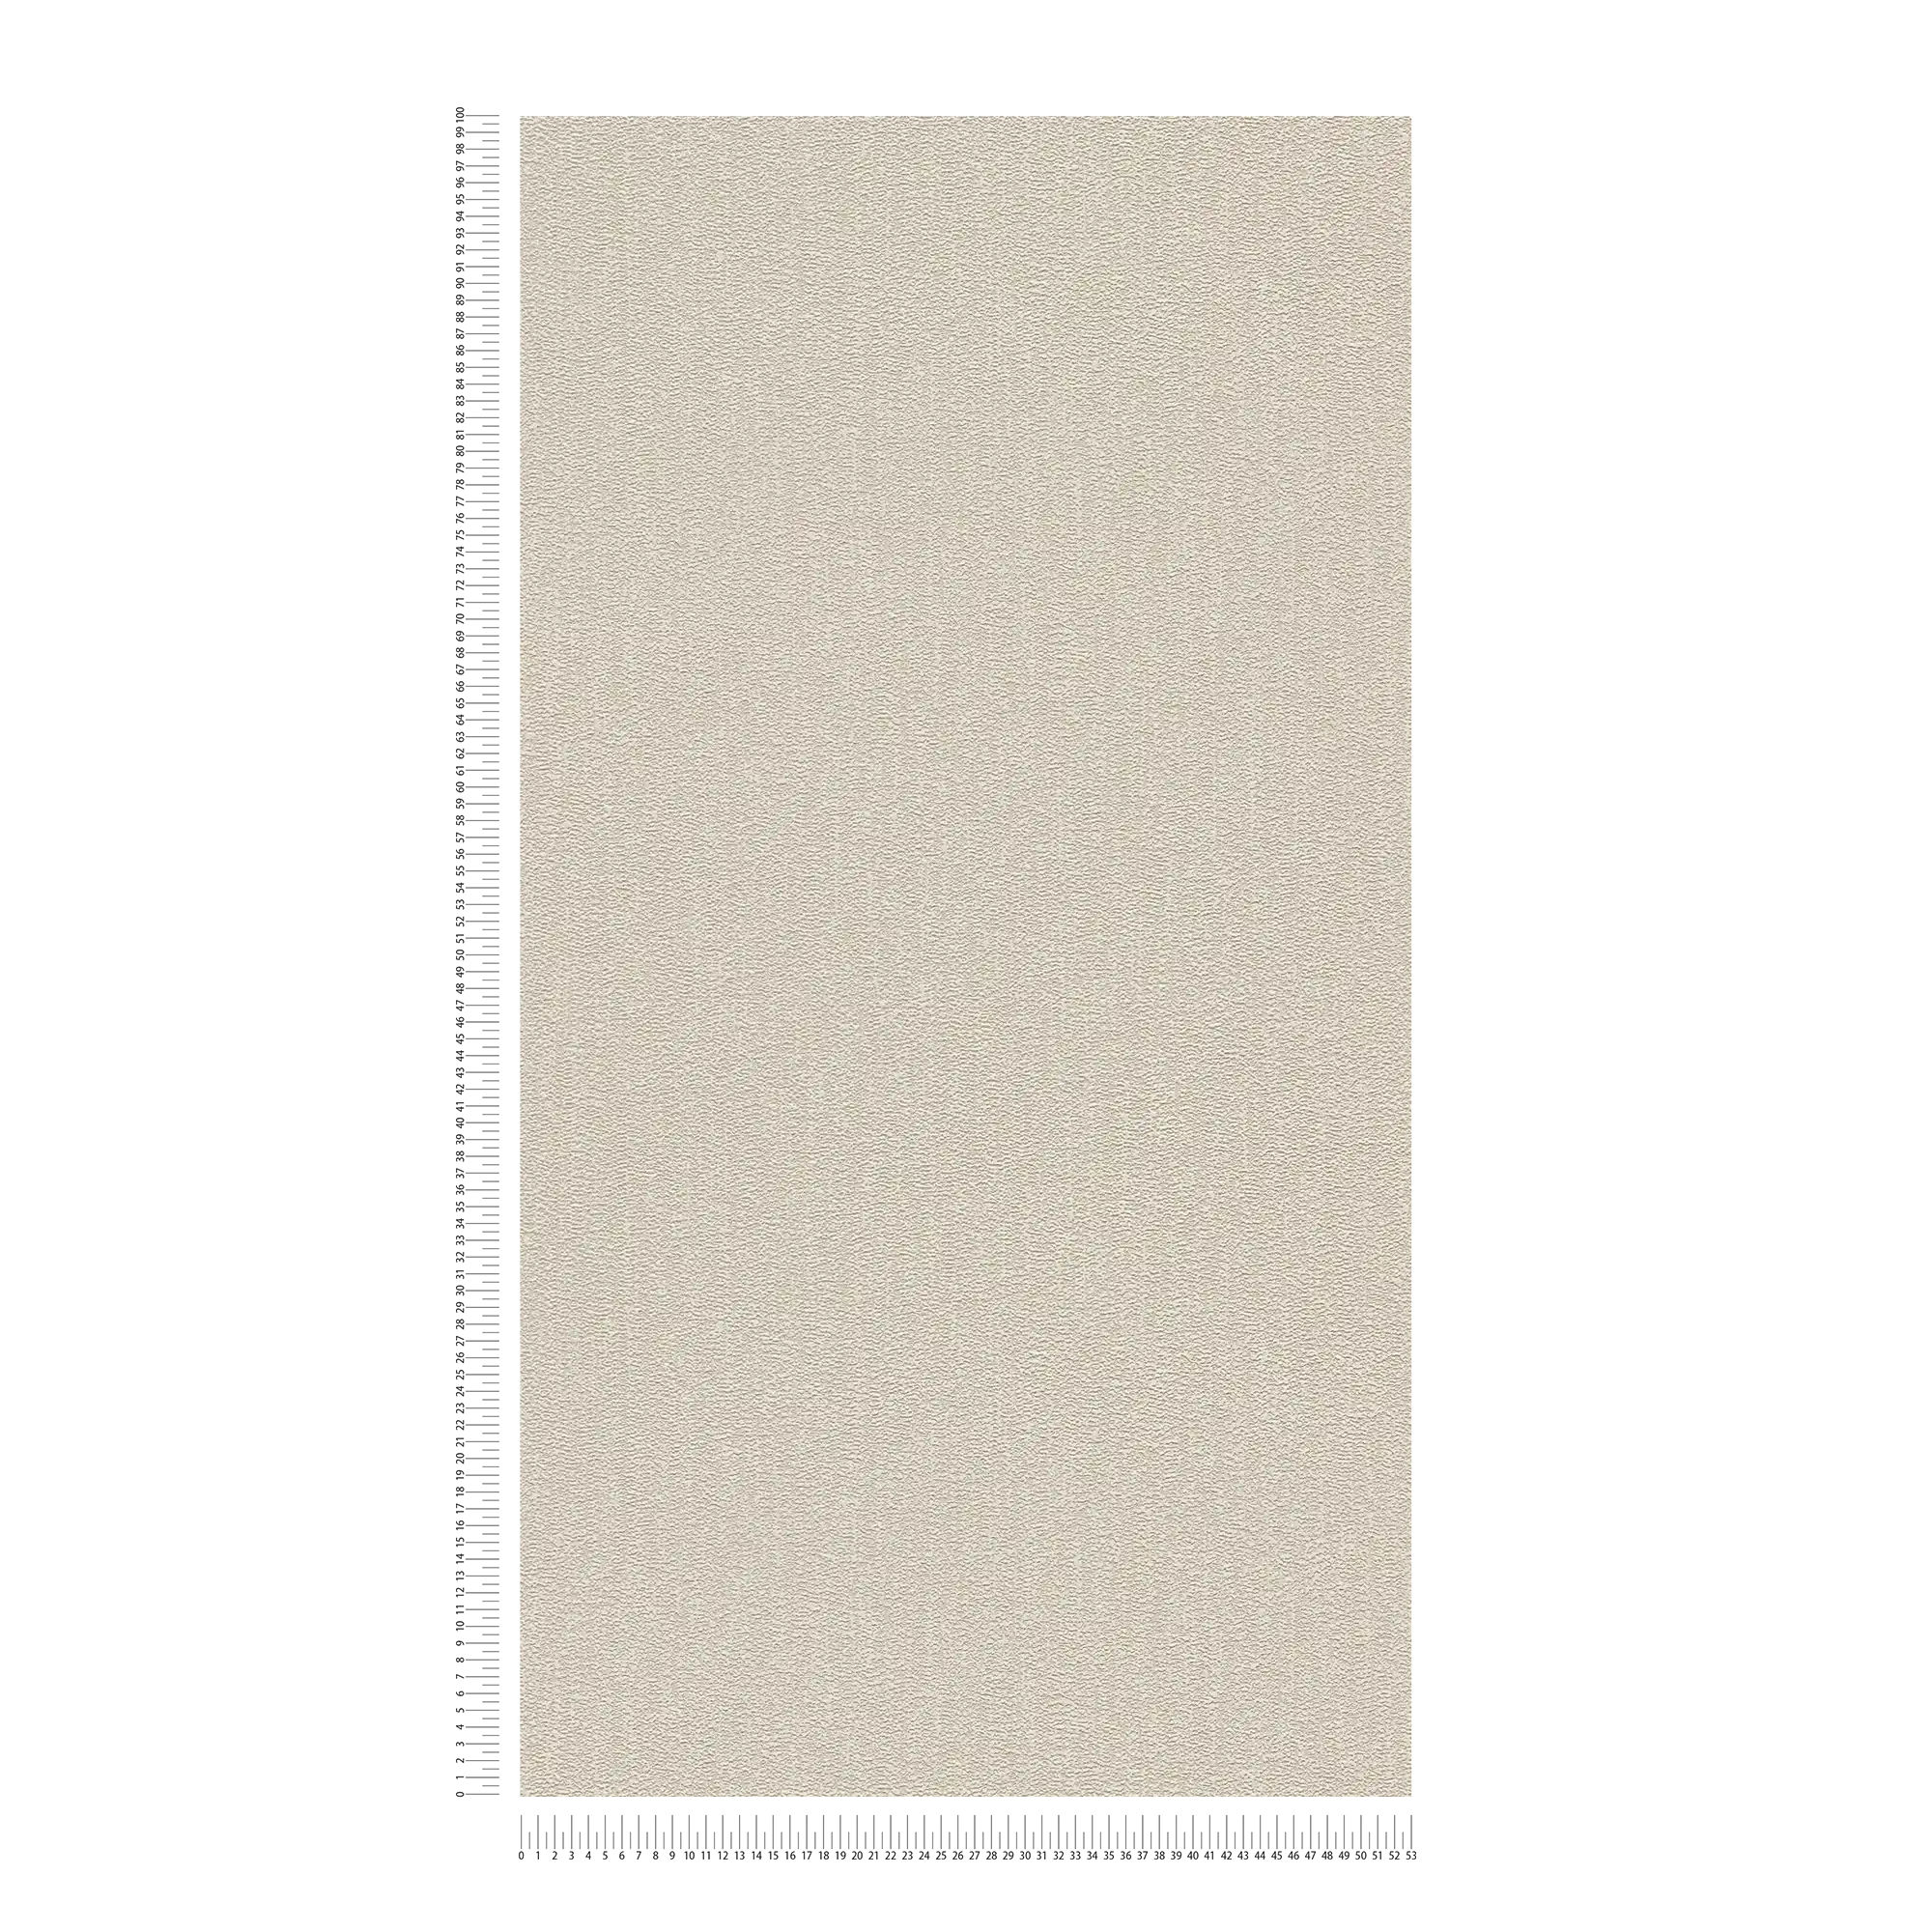             Carta da parati a tinta unita con struttura leggermente lucida - beige, grigio, argento
        